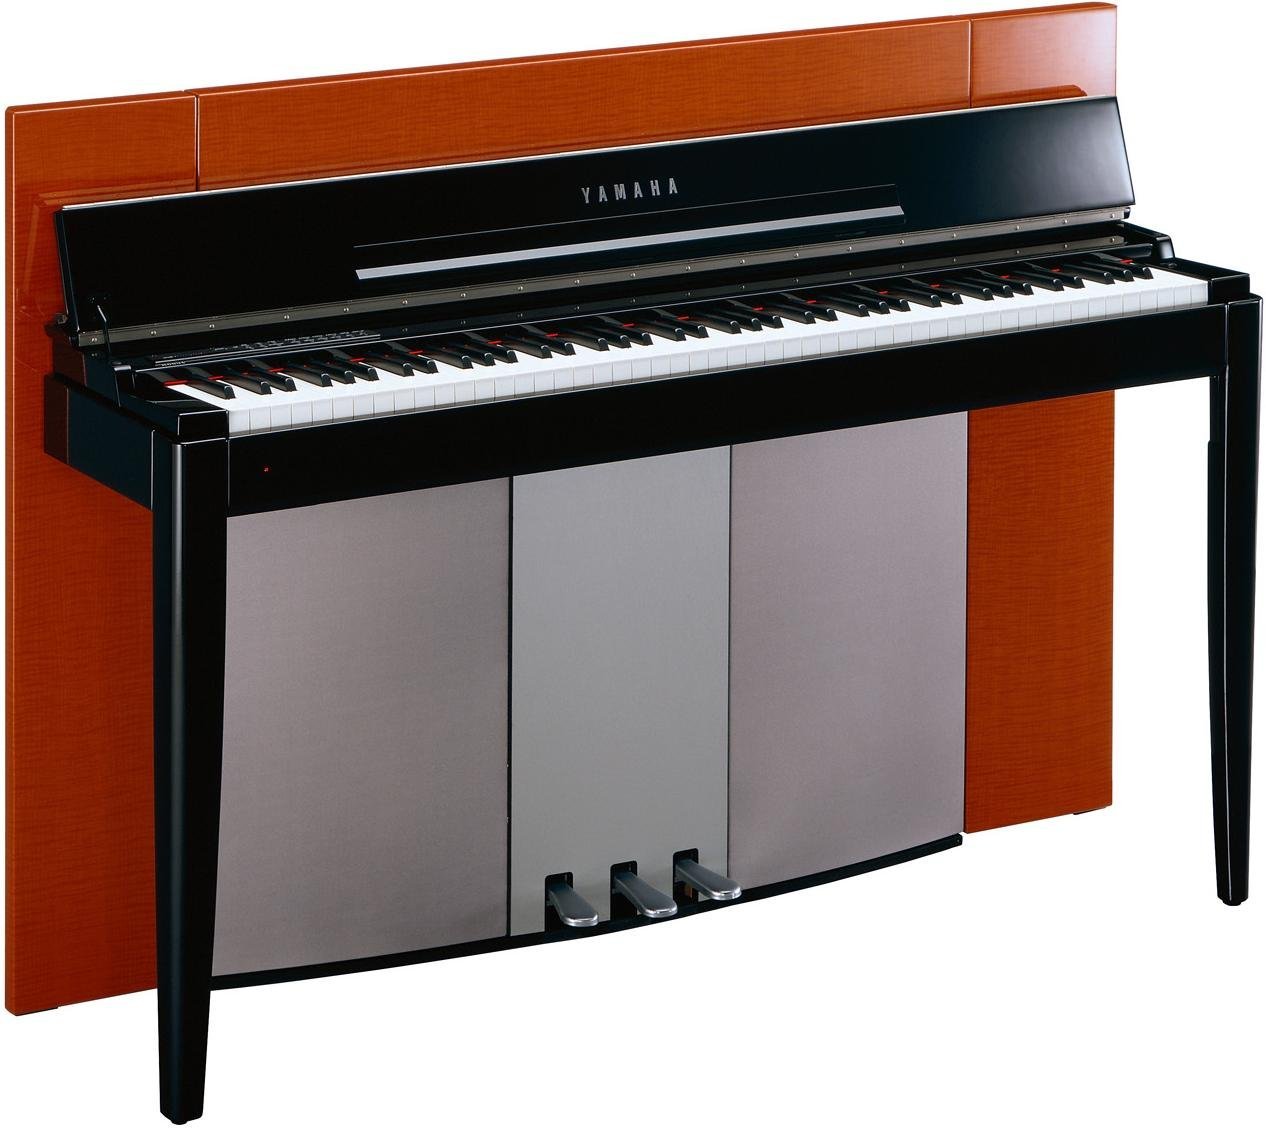 F01 - 規格 - MODUS - 鋼琴 - 樂器 - 產品 - Yamaha - 台灣